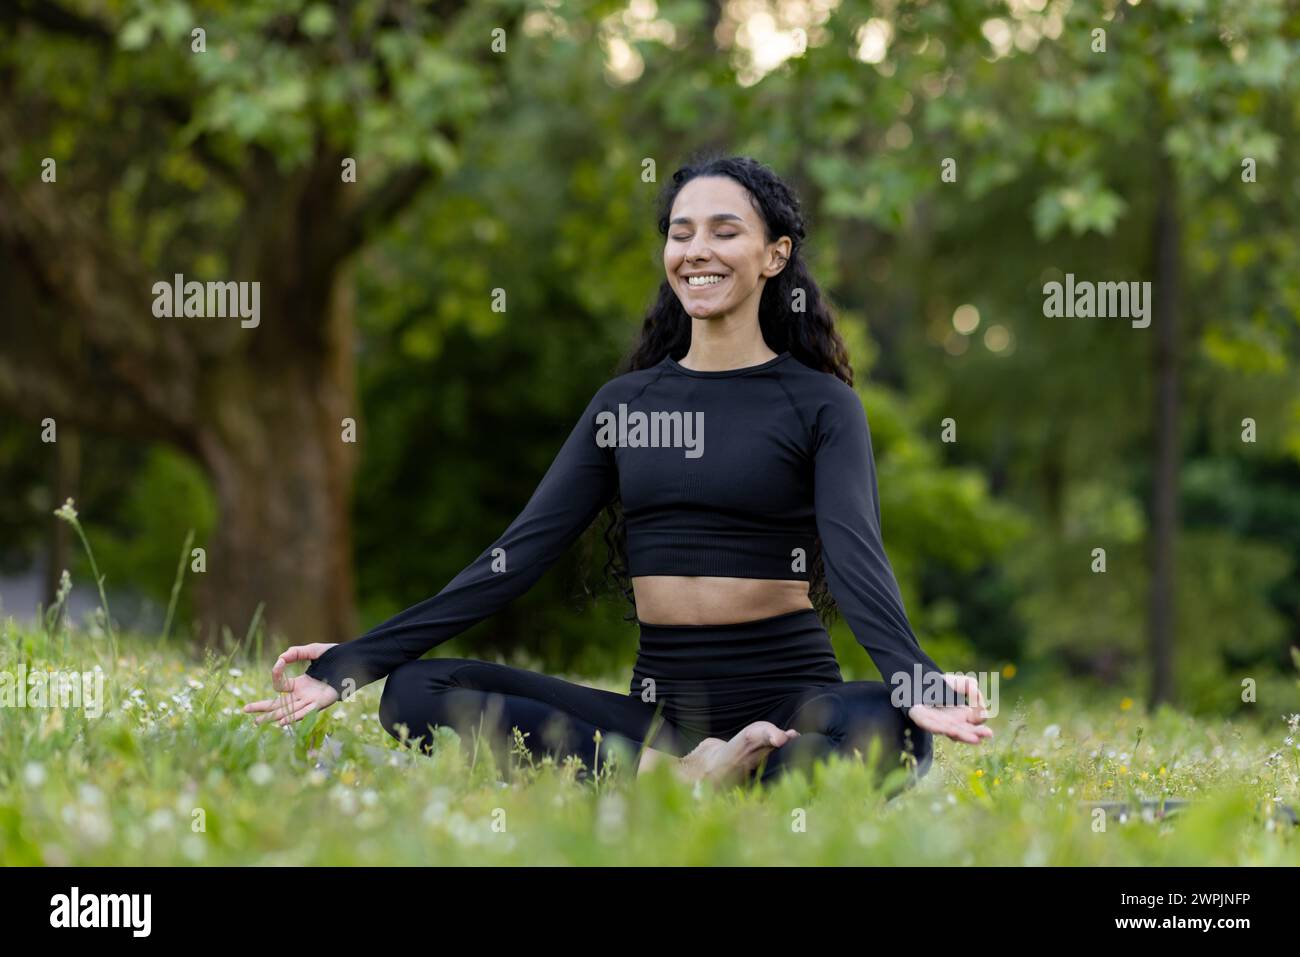 Contenu la jeune femme en vêtements d'activité aime la méditation de yoga dans un parc paisible, incarnant le bien-être et la pleine conscience. Banque D'Images